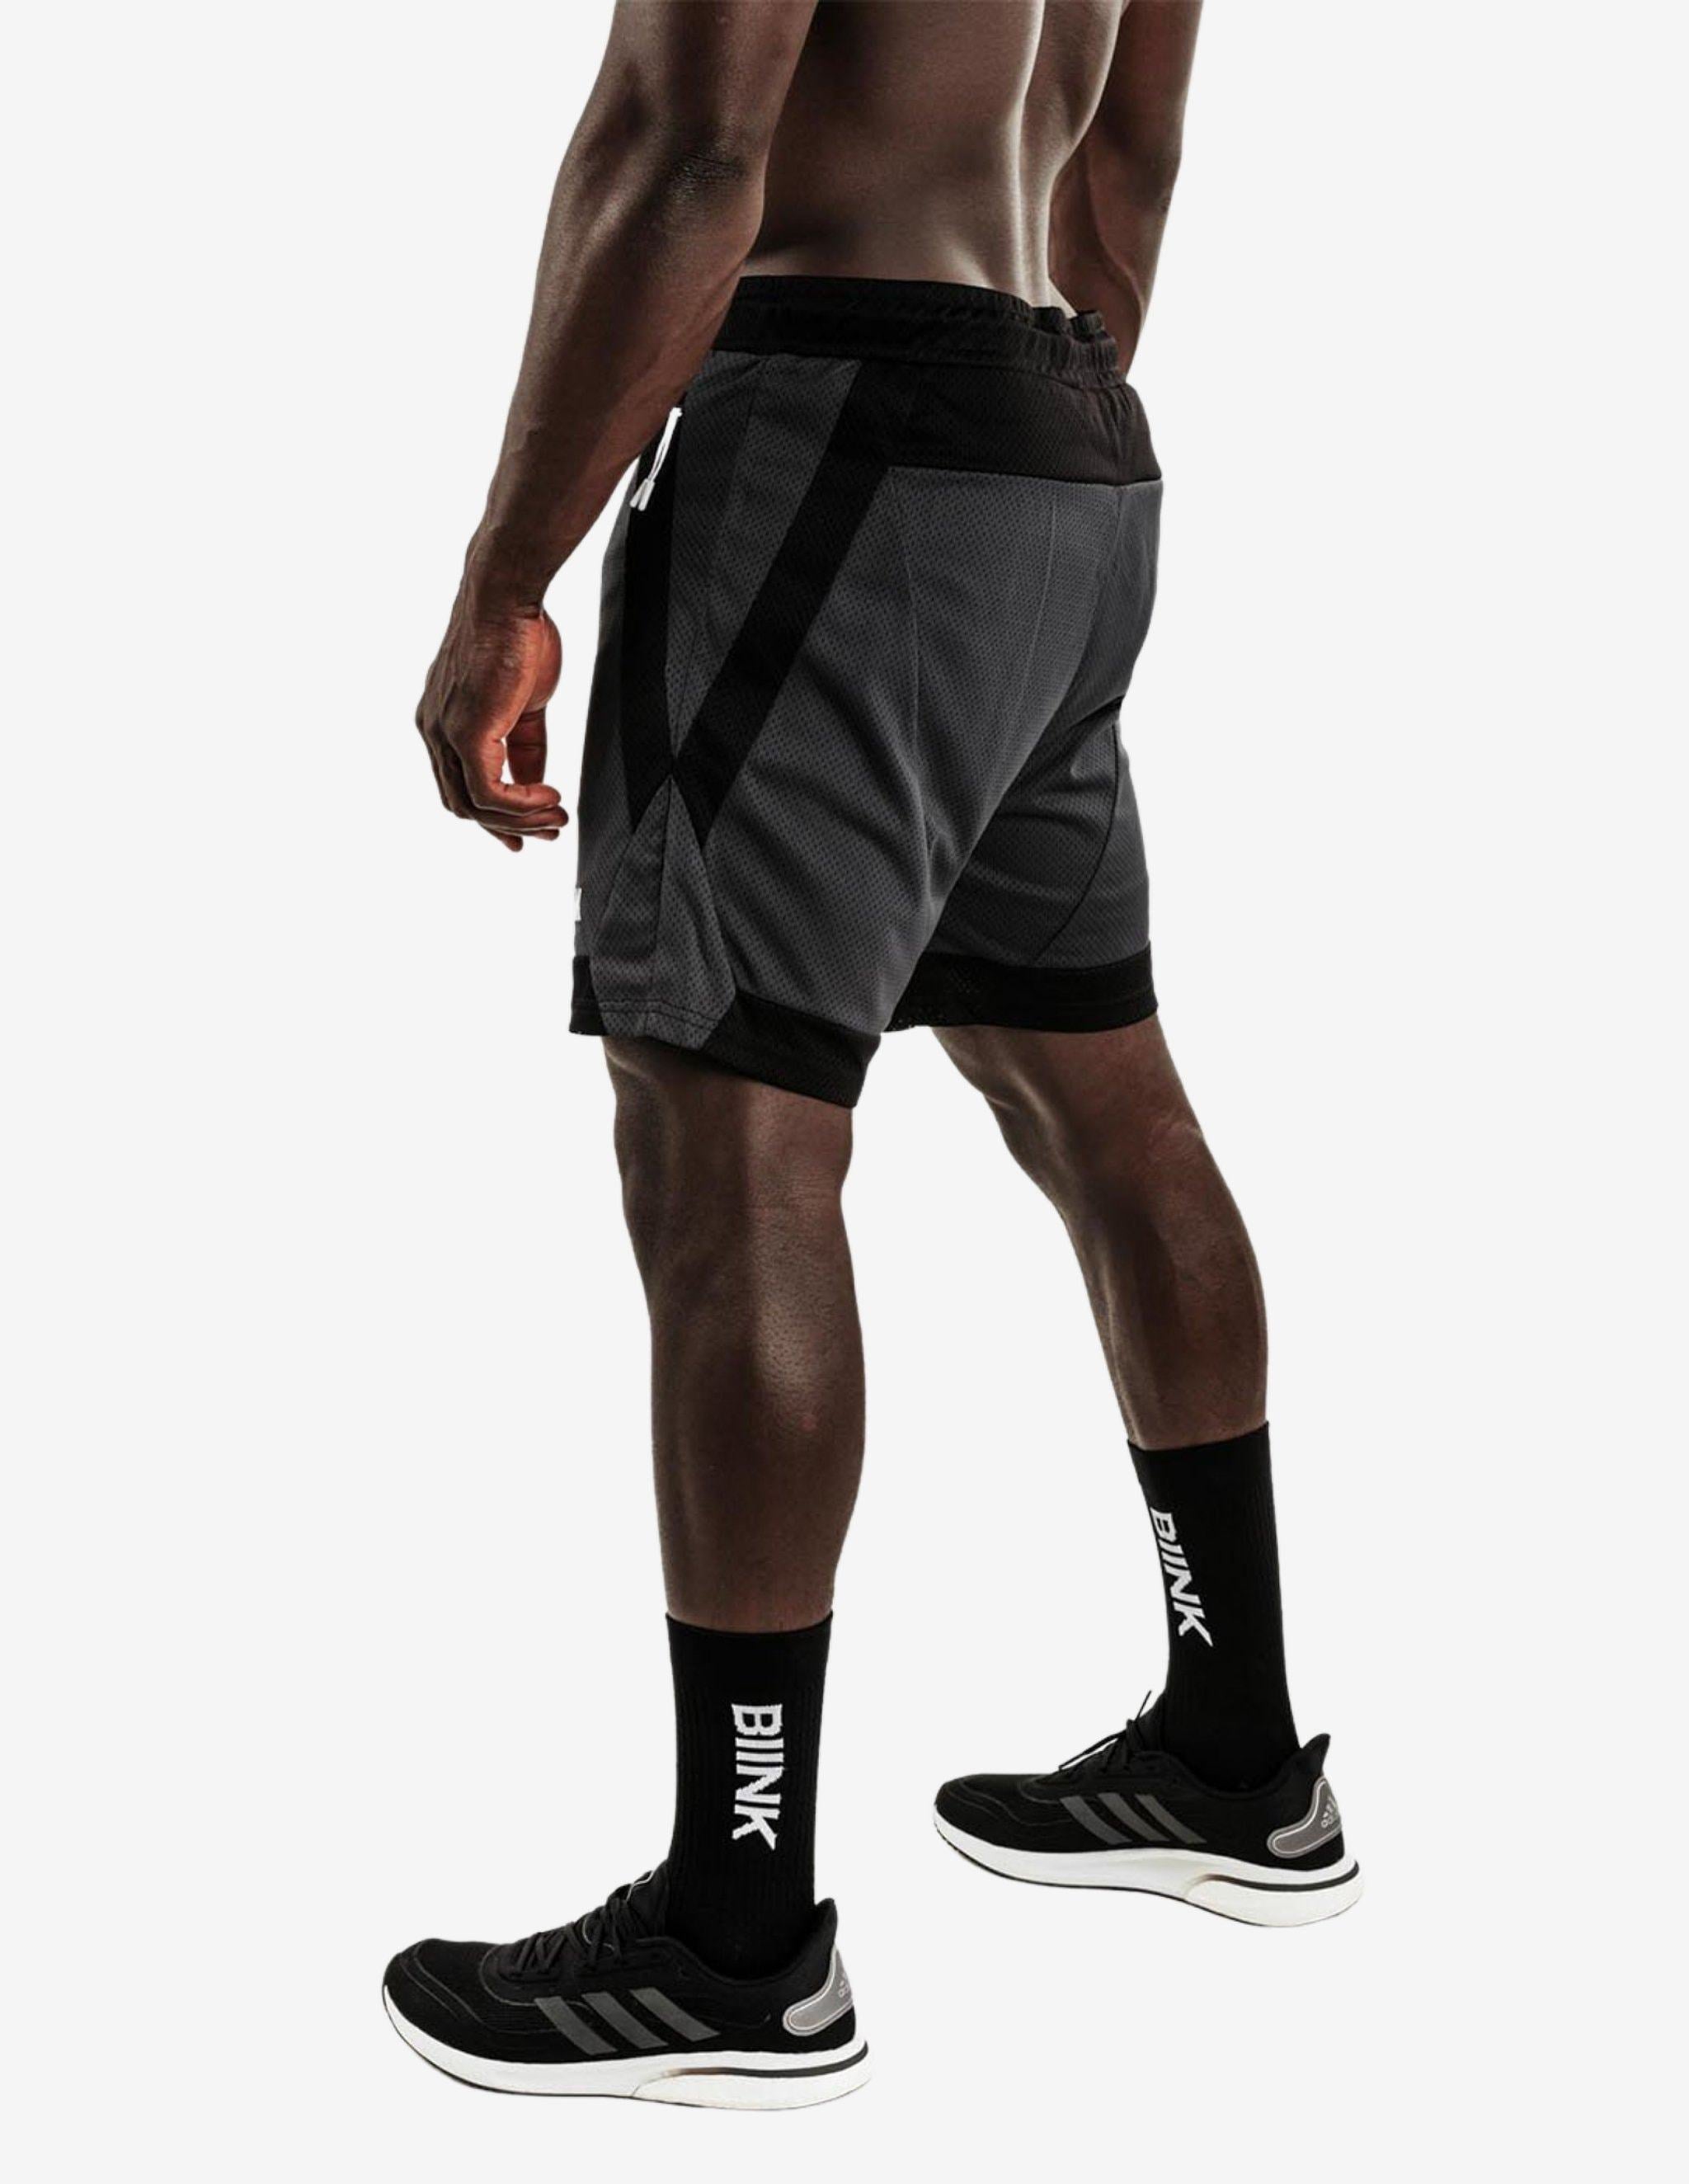 Mesh Panel 2-in-1 Basketball Shorts - Black / Gunmetal-Shorts Man-Biink Athleisure-Guru Muscle